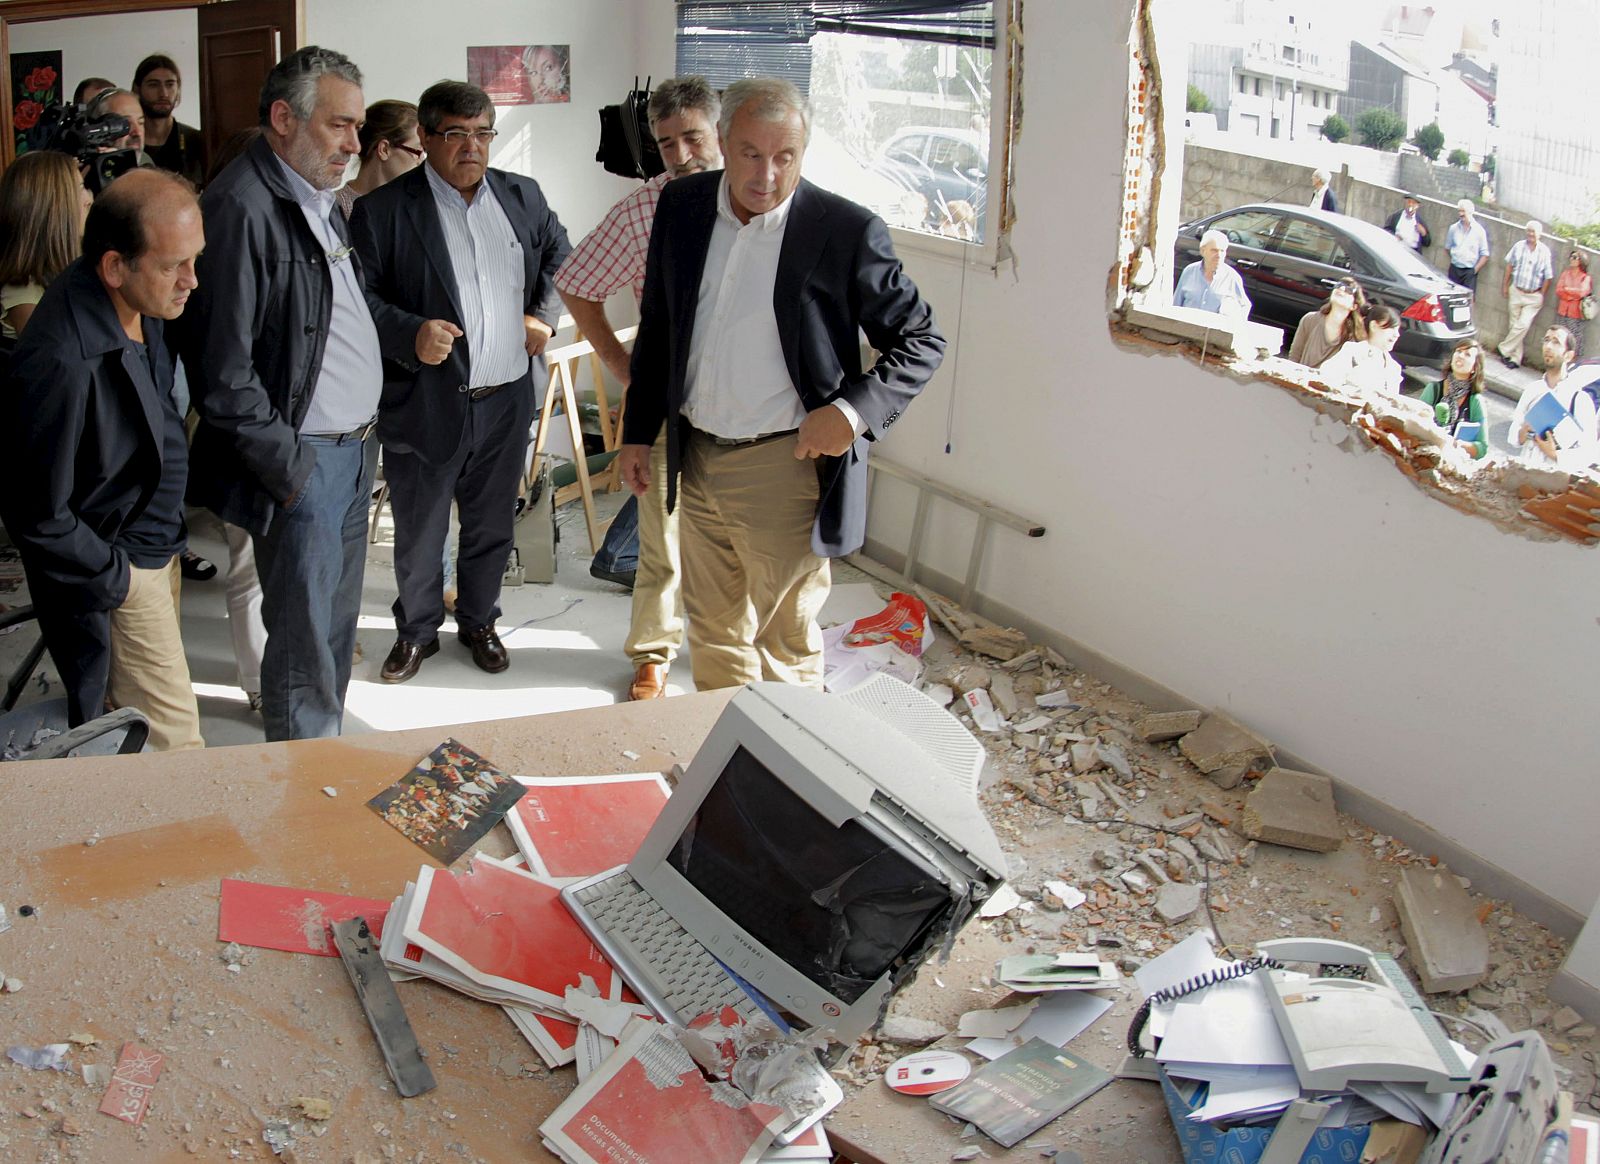 El artefacto ha provocado importantes daños materiales en la sede del PSOE en A Estrada, Pontevedra.